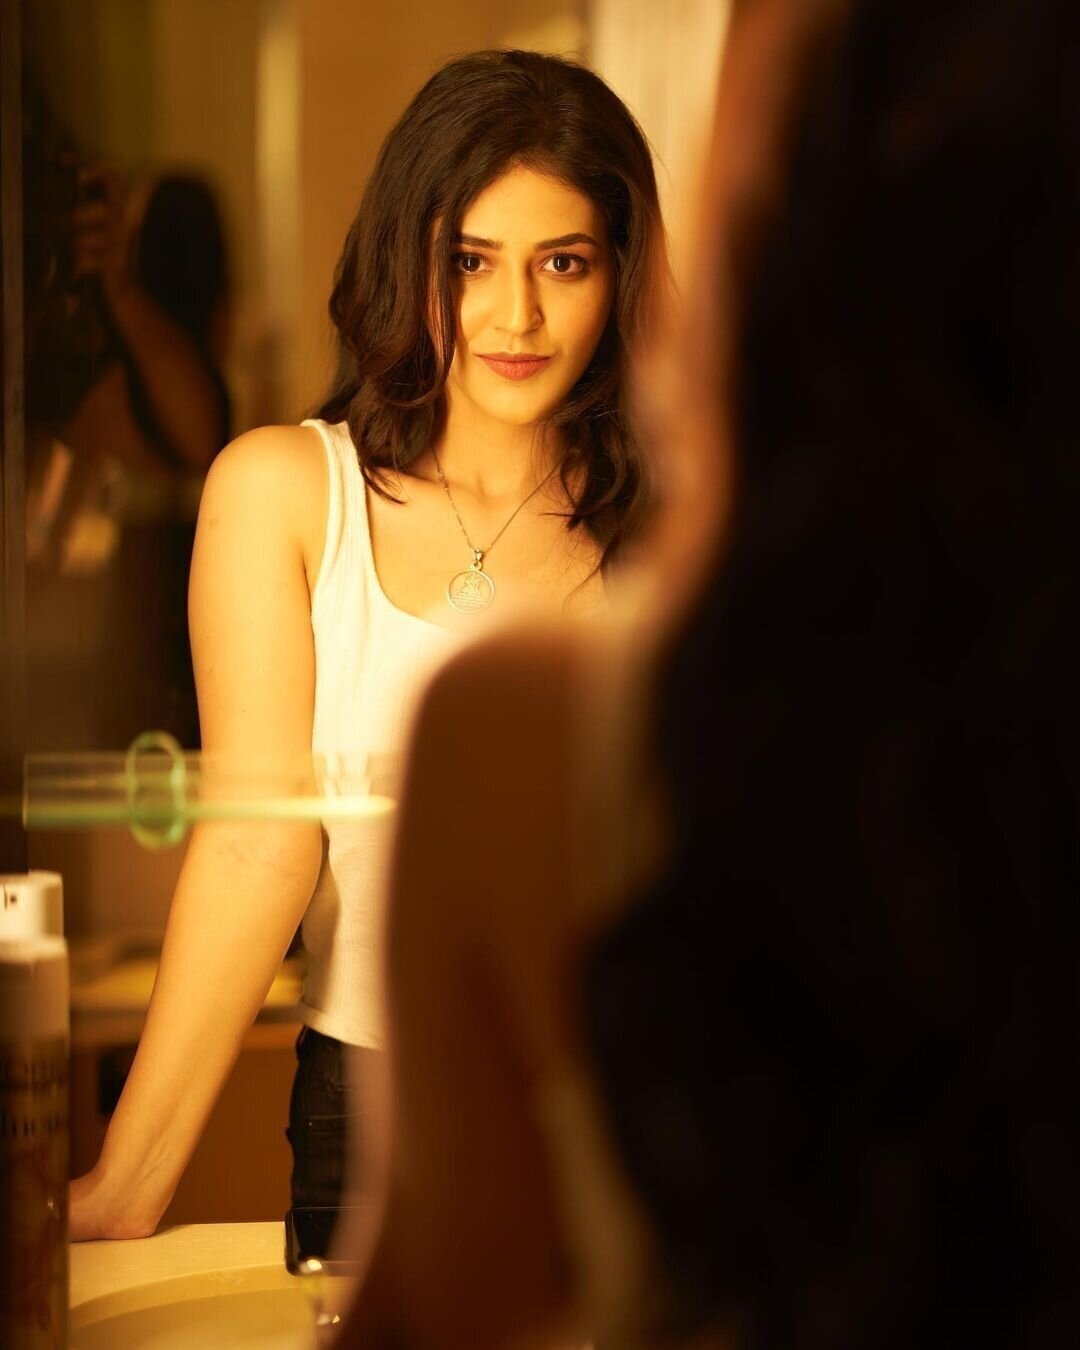 Priyanka Jawalkar Hot Photo In MakeUp Room